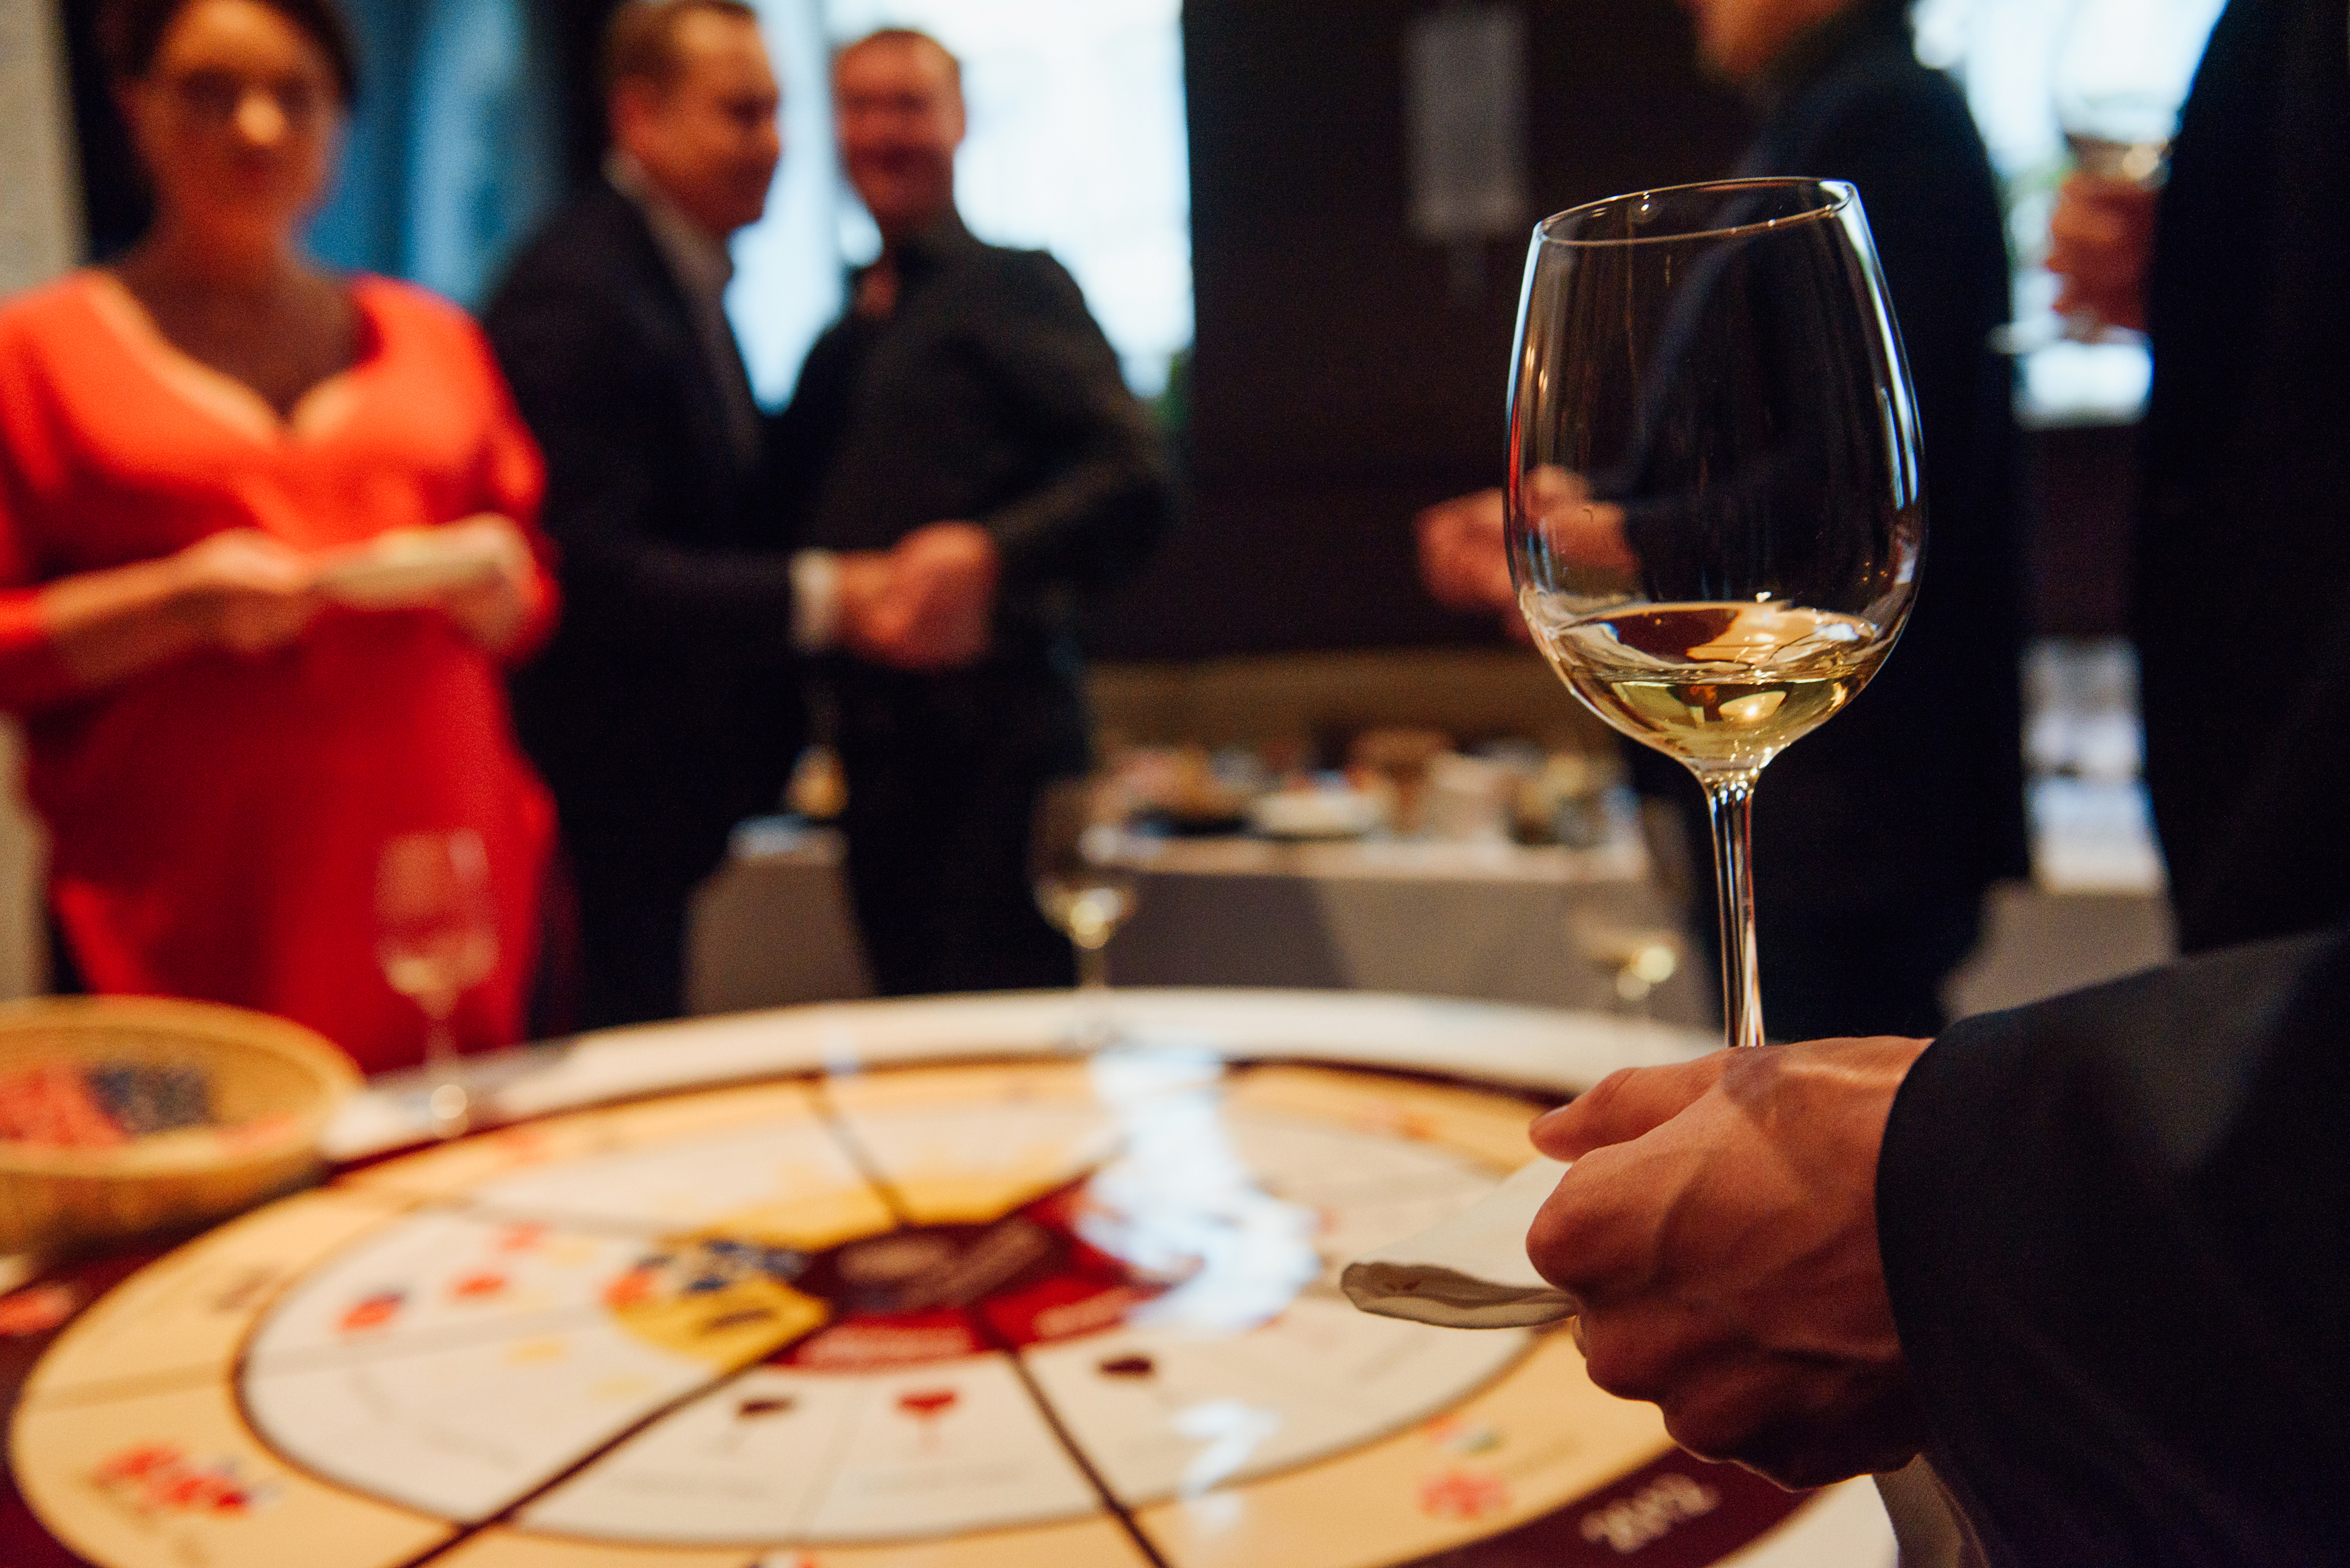 Праздничная дегустация вин и другие идеи виртуальных офисных вечеринок, о которых будут долго вспоминать ваши коллеги